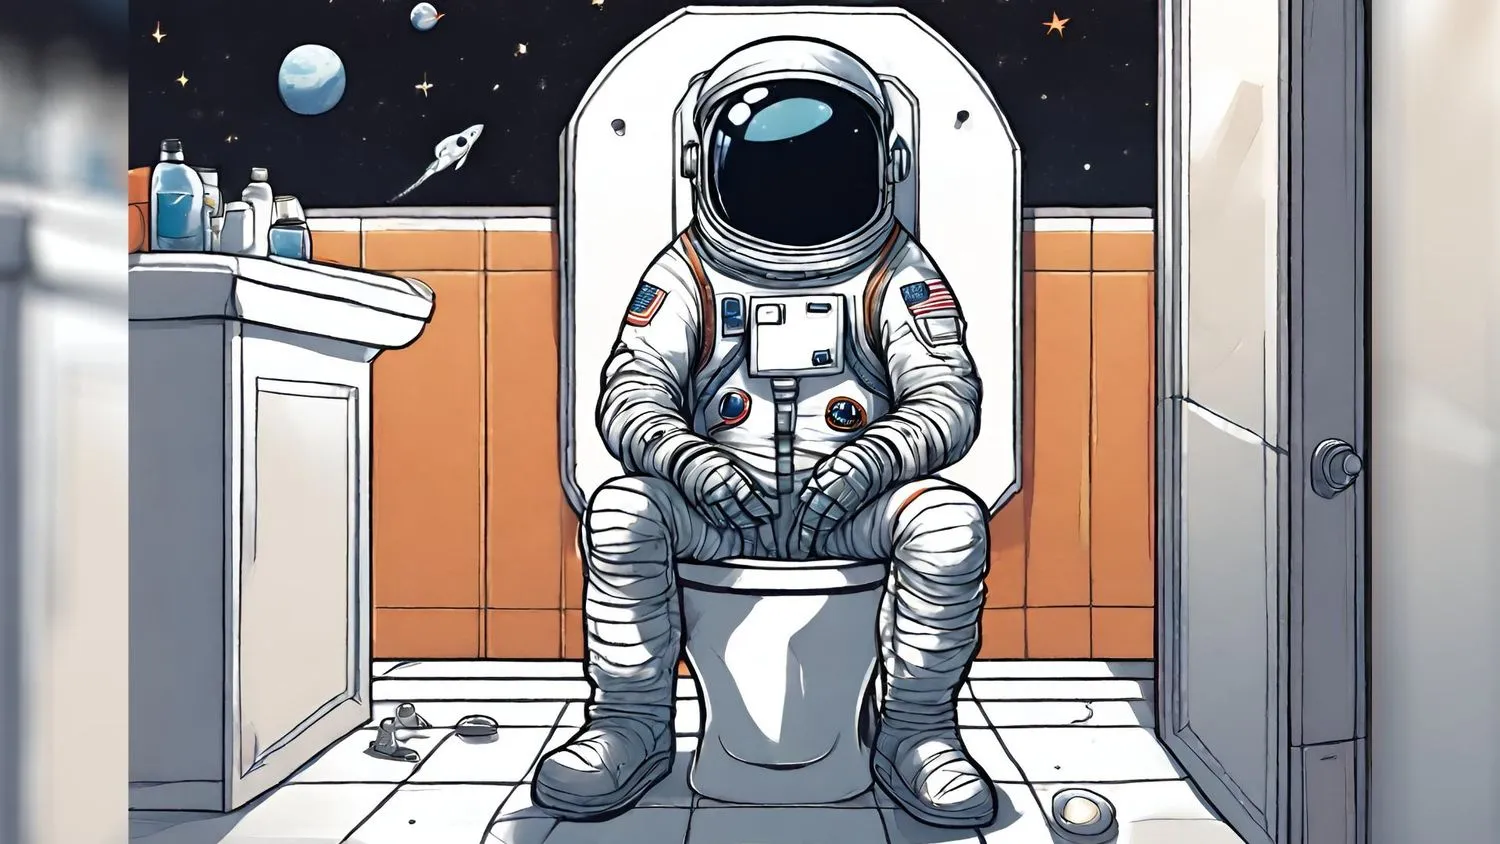 Mehr über den Artikel erfahren Wie benutzen Astronauten die Toilette im Weltraum?